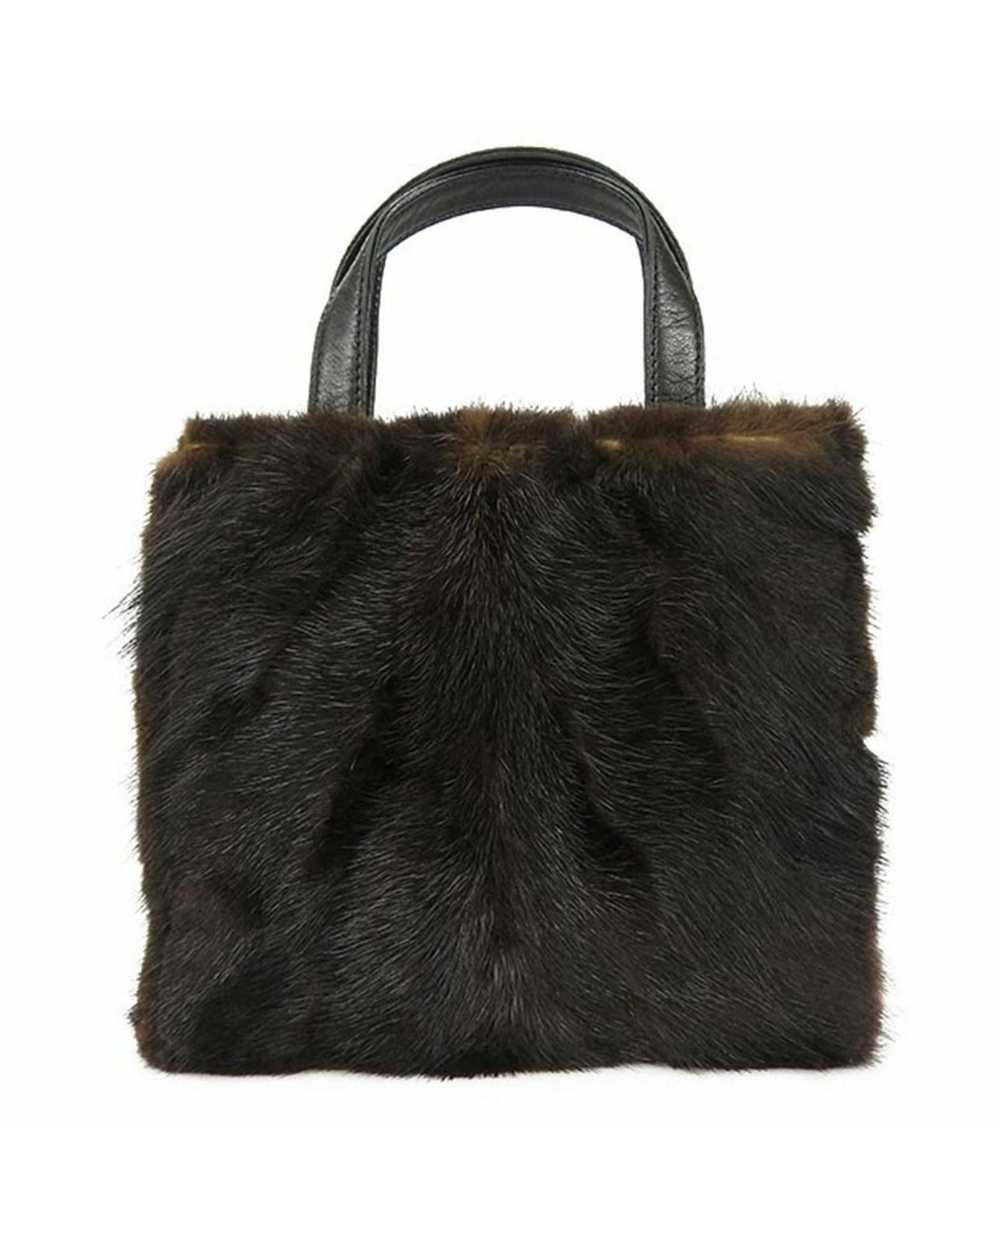 Loewe Mink Fur Nappa Leather Handbag - image 8